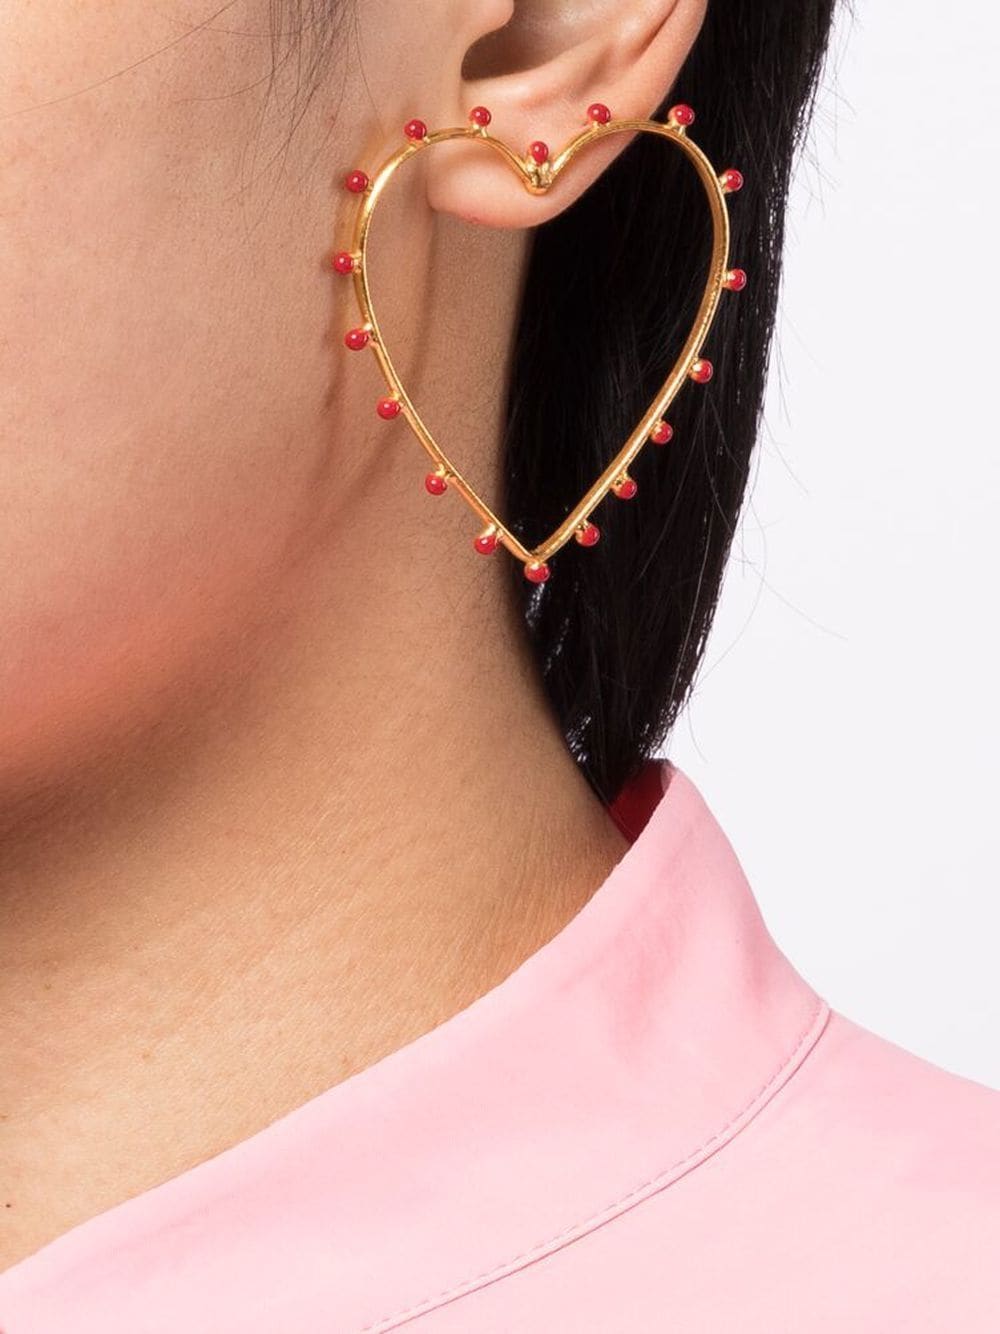 Sylvia Toledano Spirale Creole Hoop Earrings